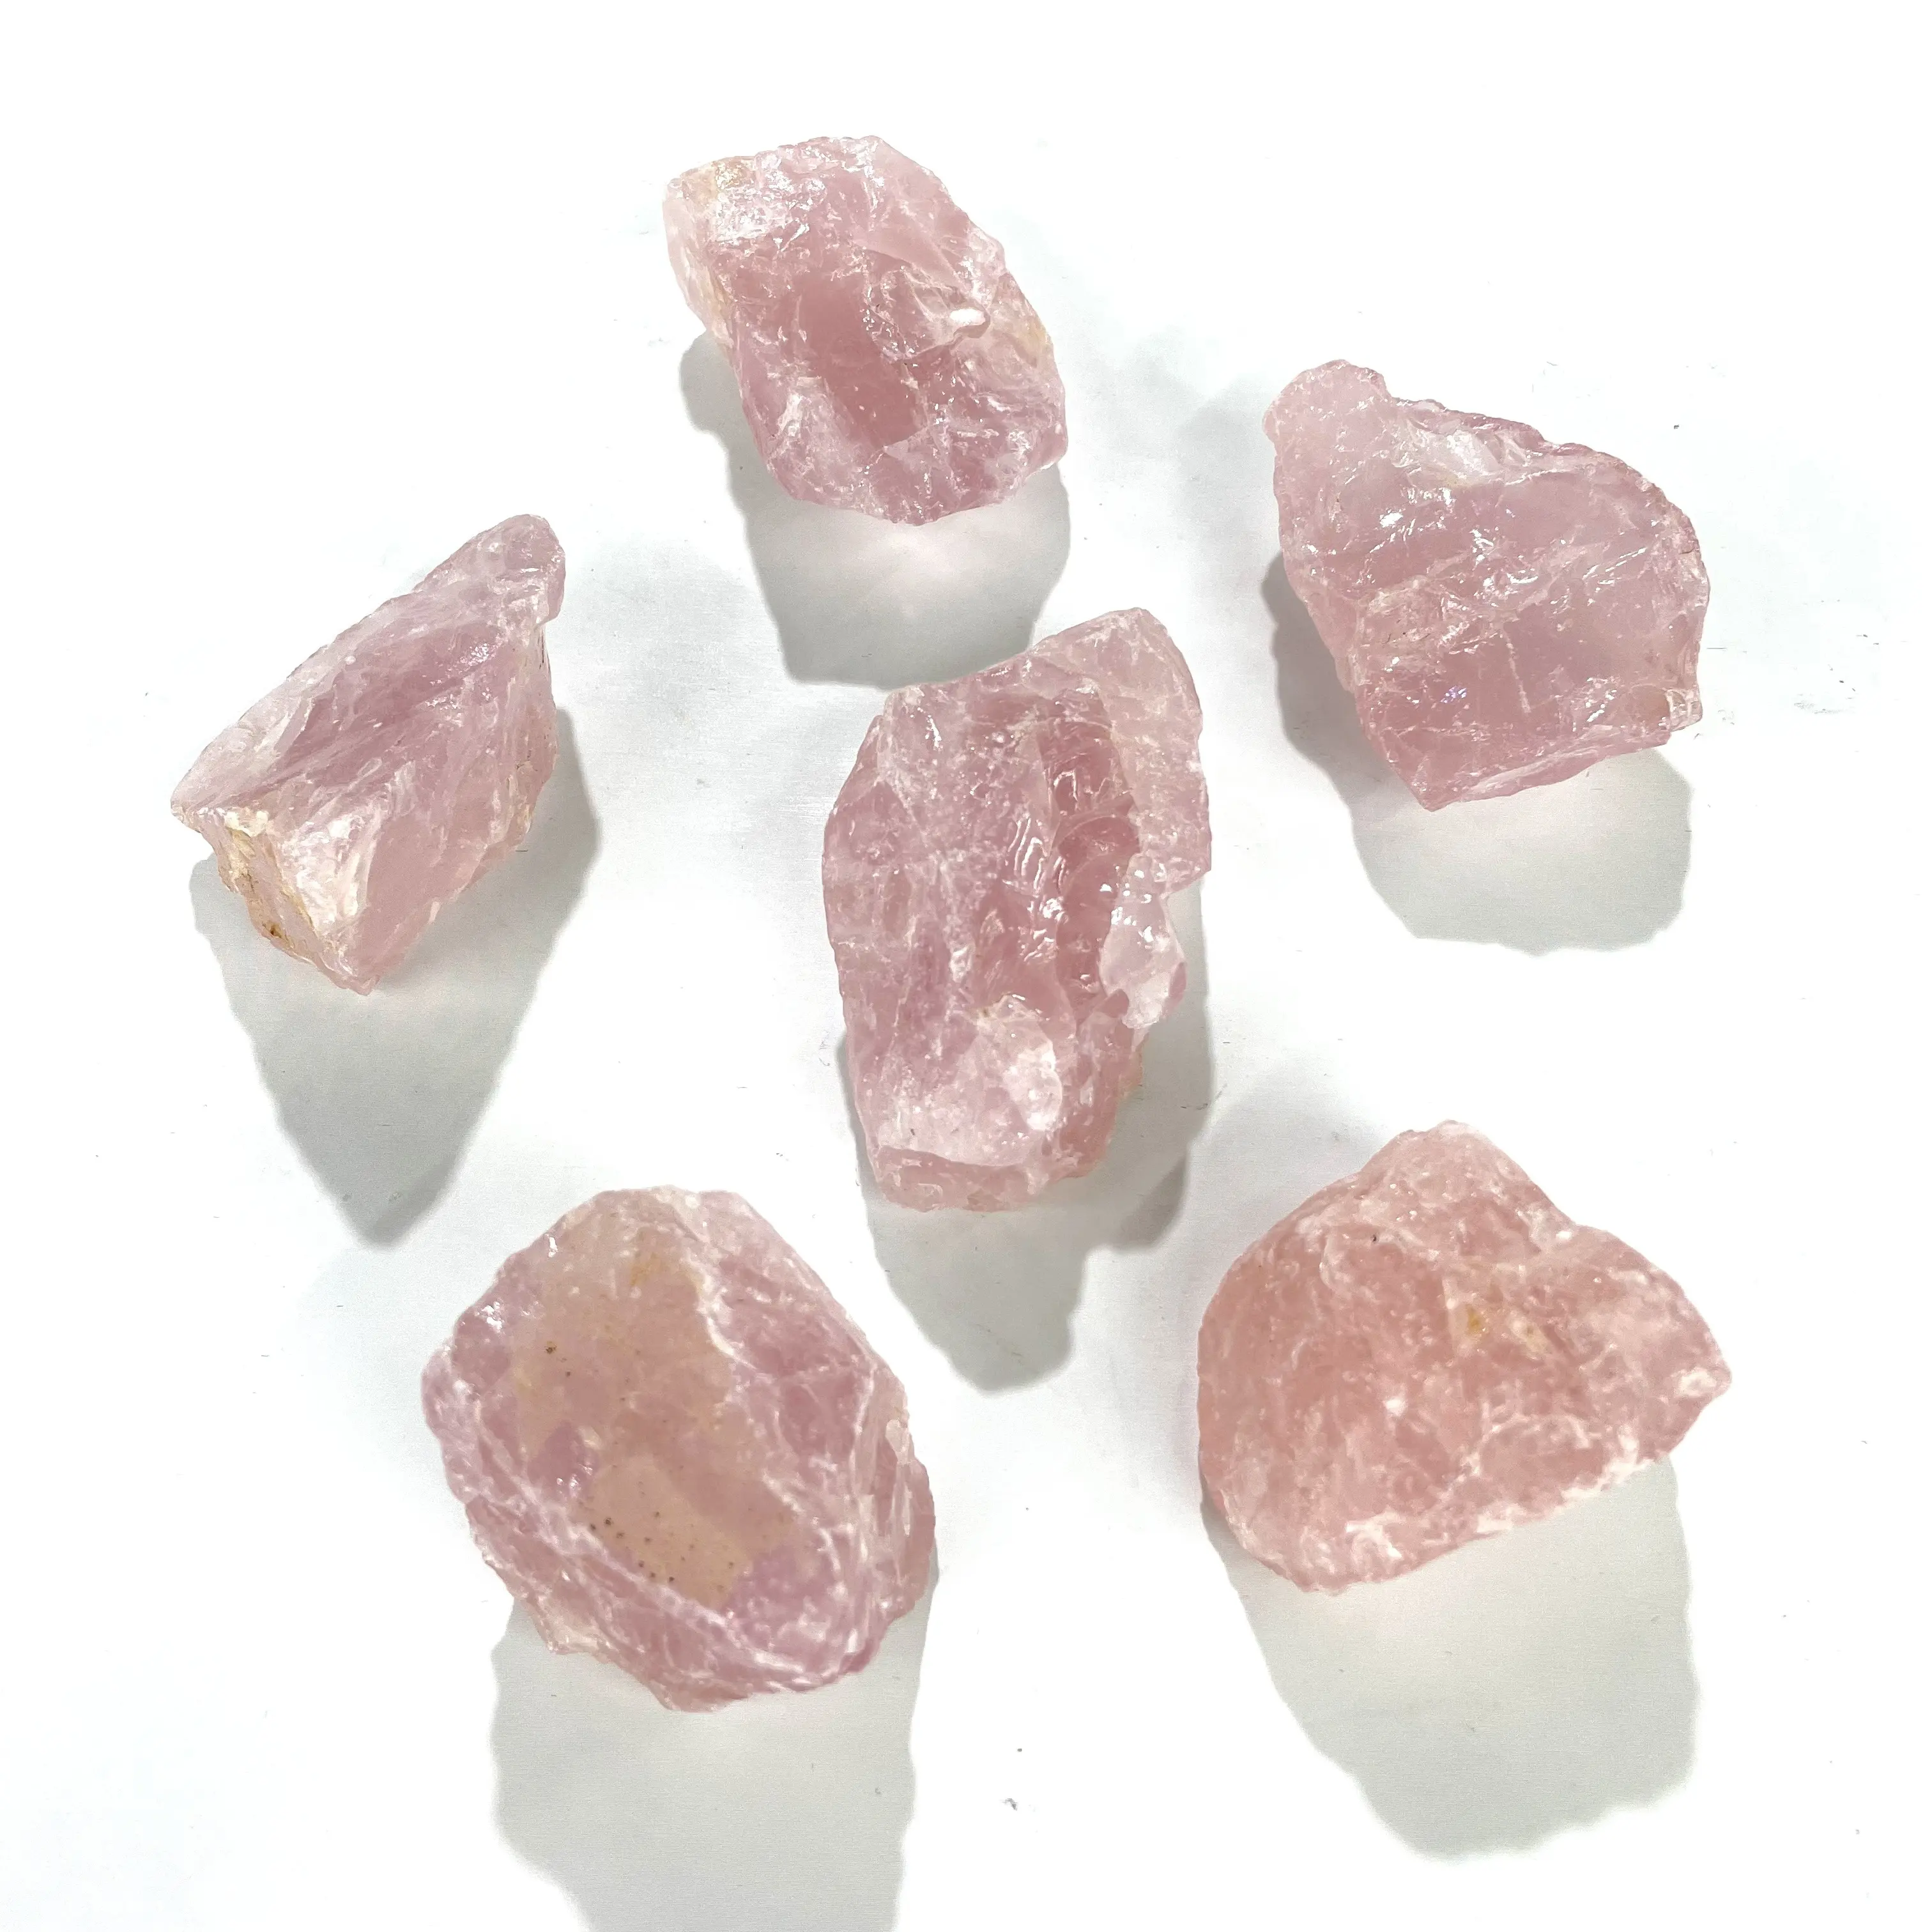 Piedra cruda de cuarzo rosa natural de alta calidad, cristal curativo, piedra preciosa de chakra reiki en bruto para la curación